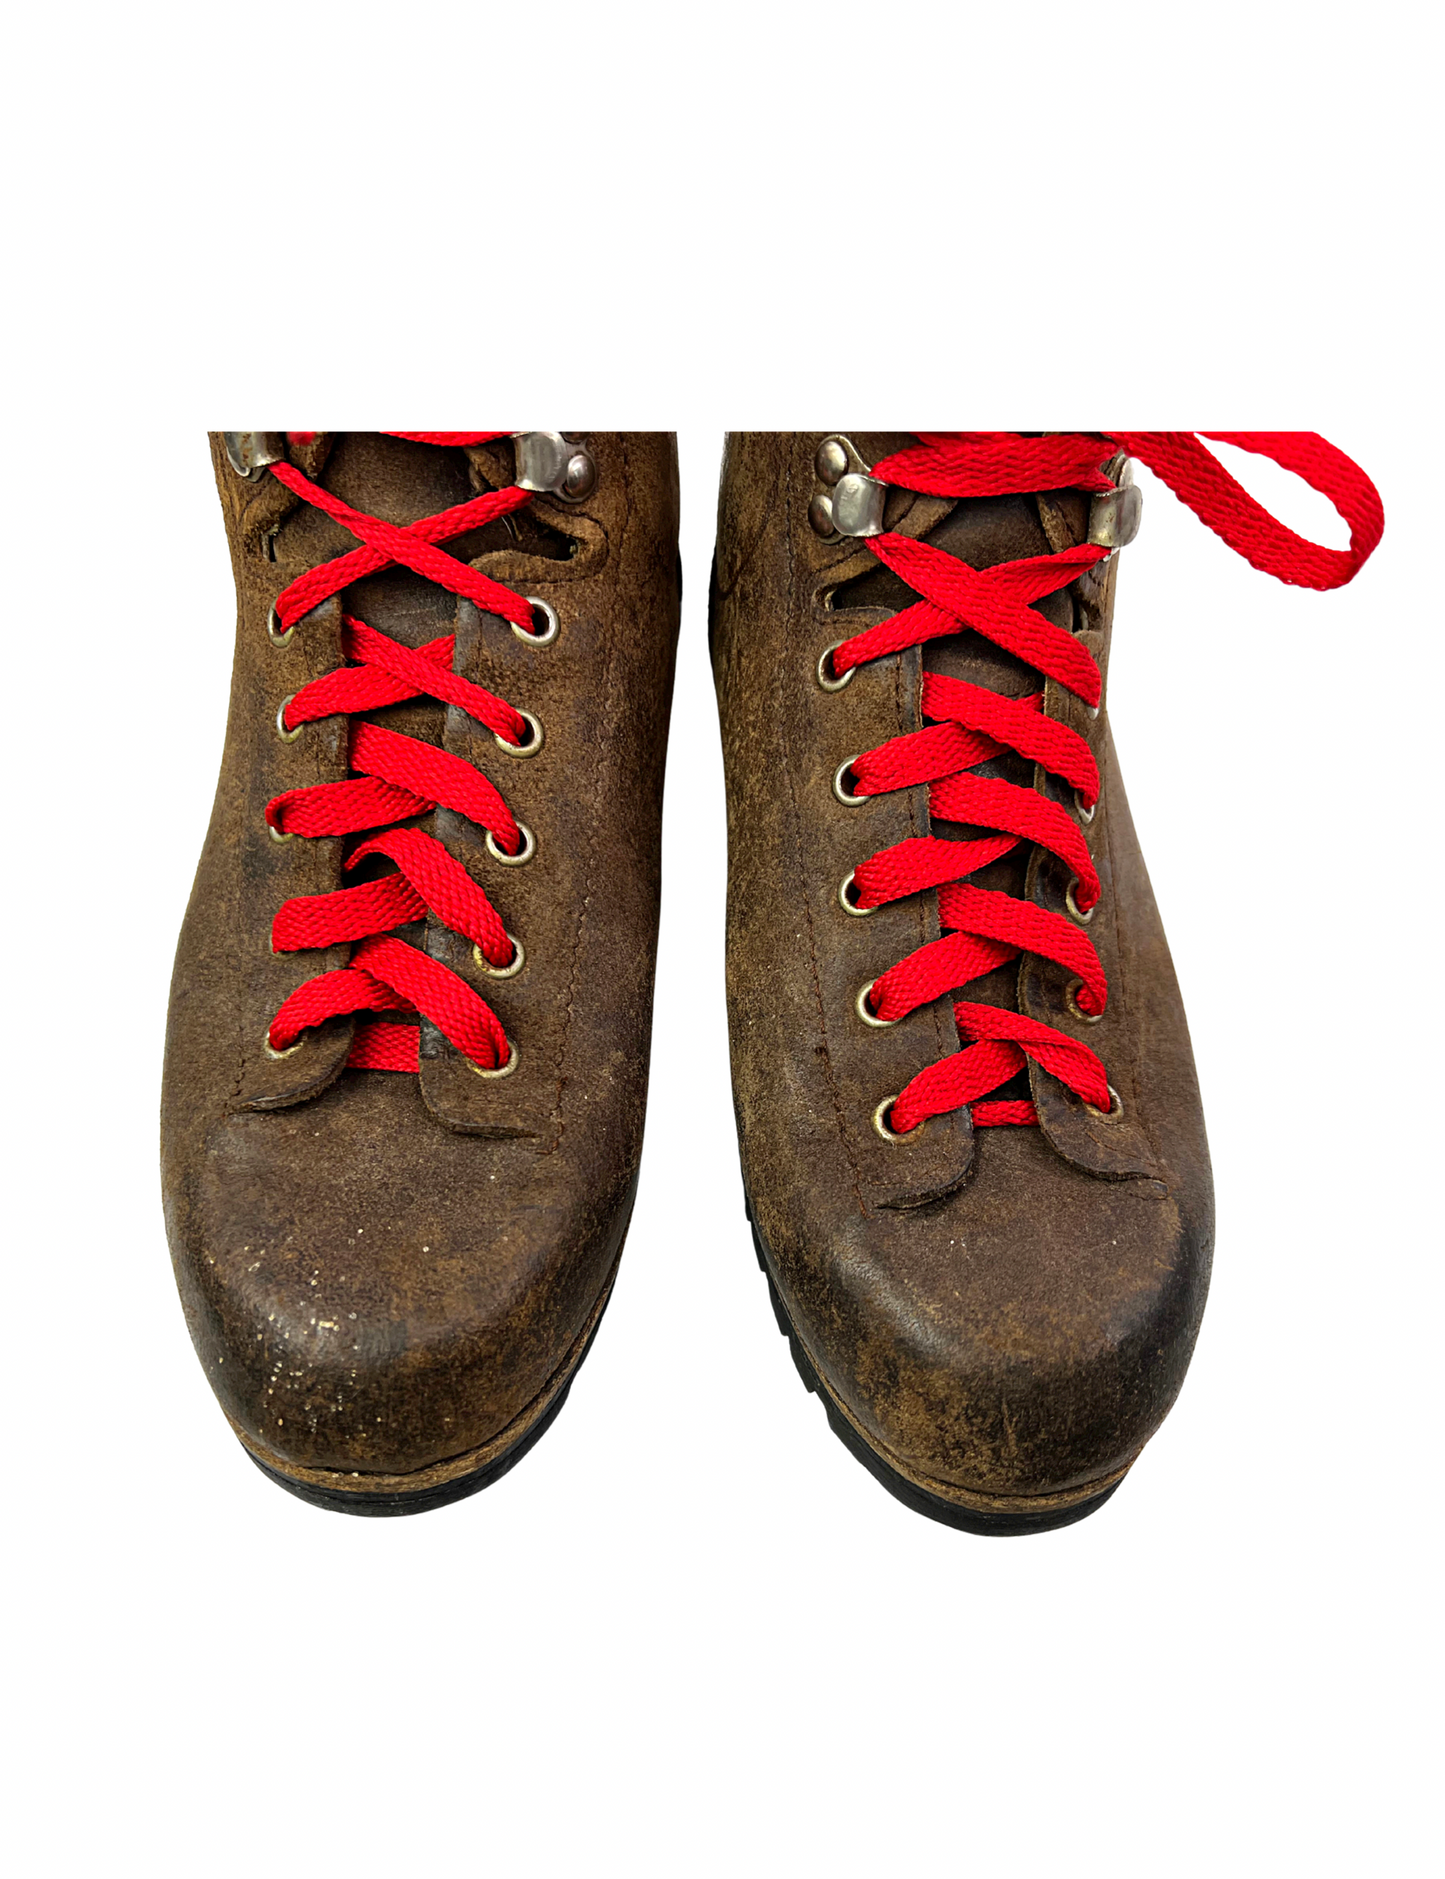 70’s Vasque Hiking Vibram Sole Italian Split Cowhide Leather Laceup Boots Wms Size 7M